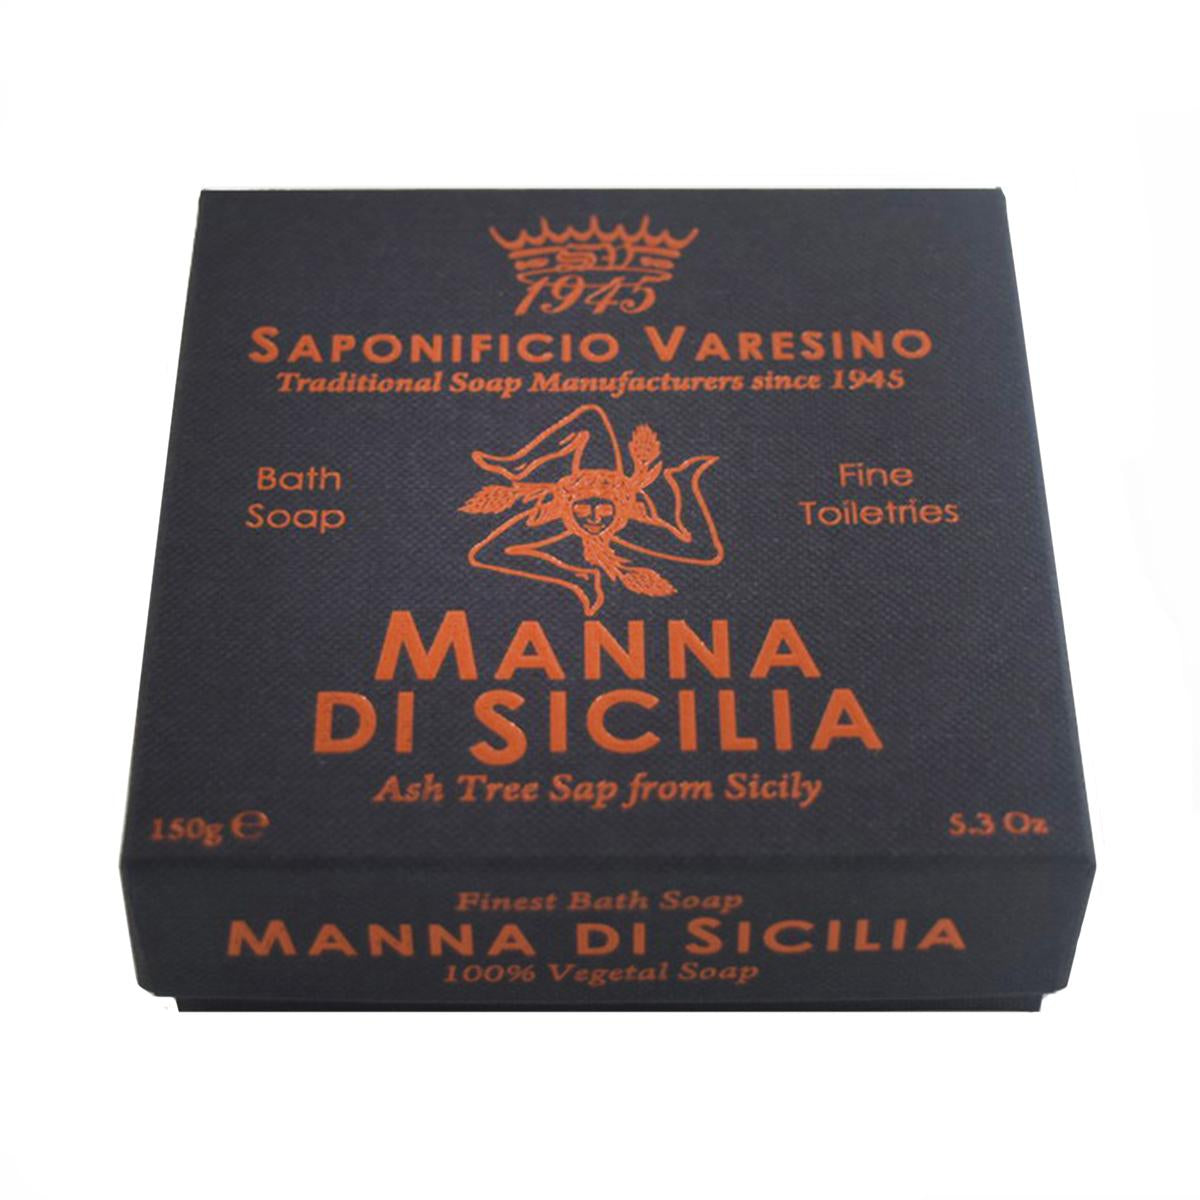 Primary image of Manna Di Sicilia Bath Soap